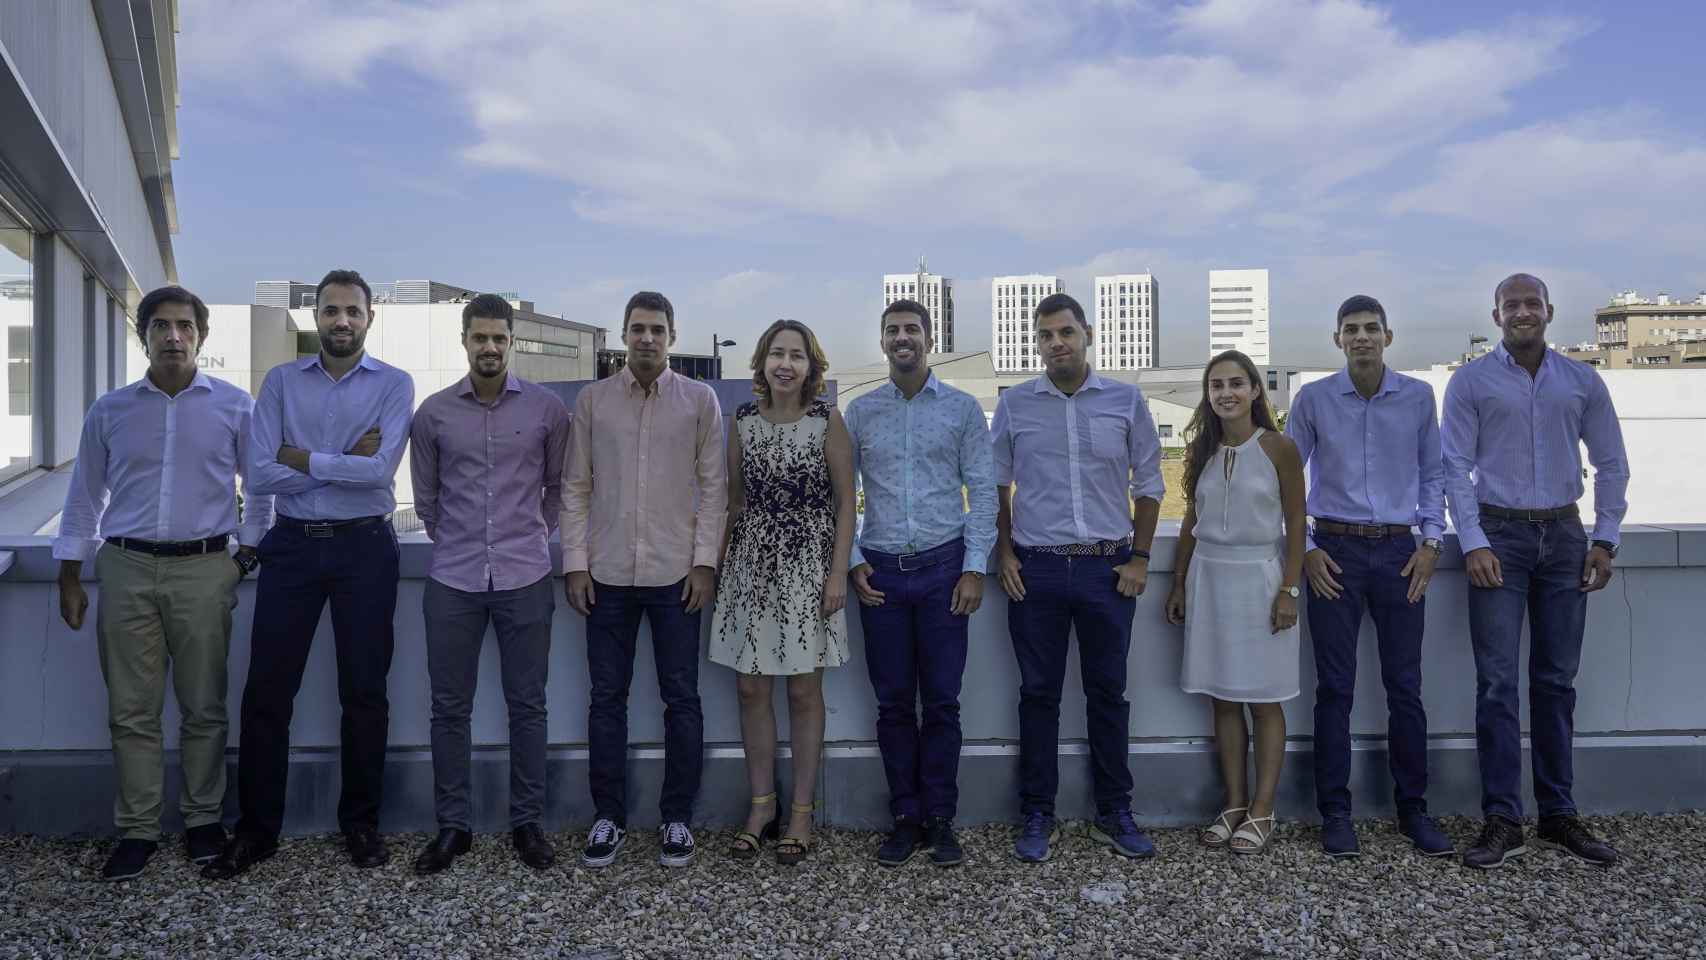 Equipo humano que conforma la startup Regemat 3D con sede en Granada.